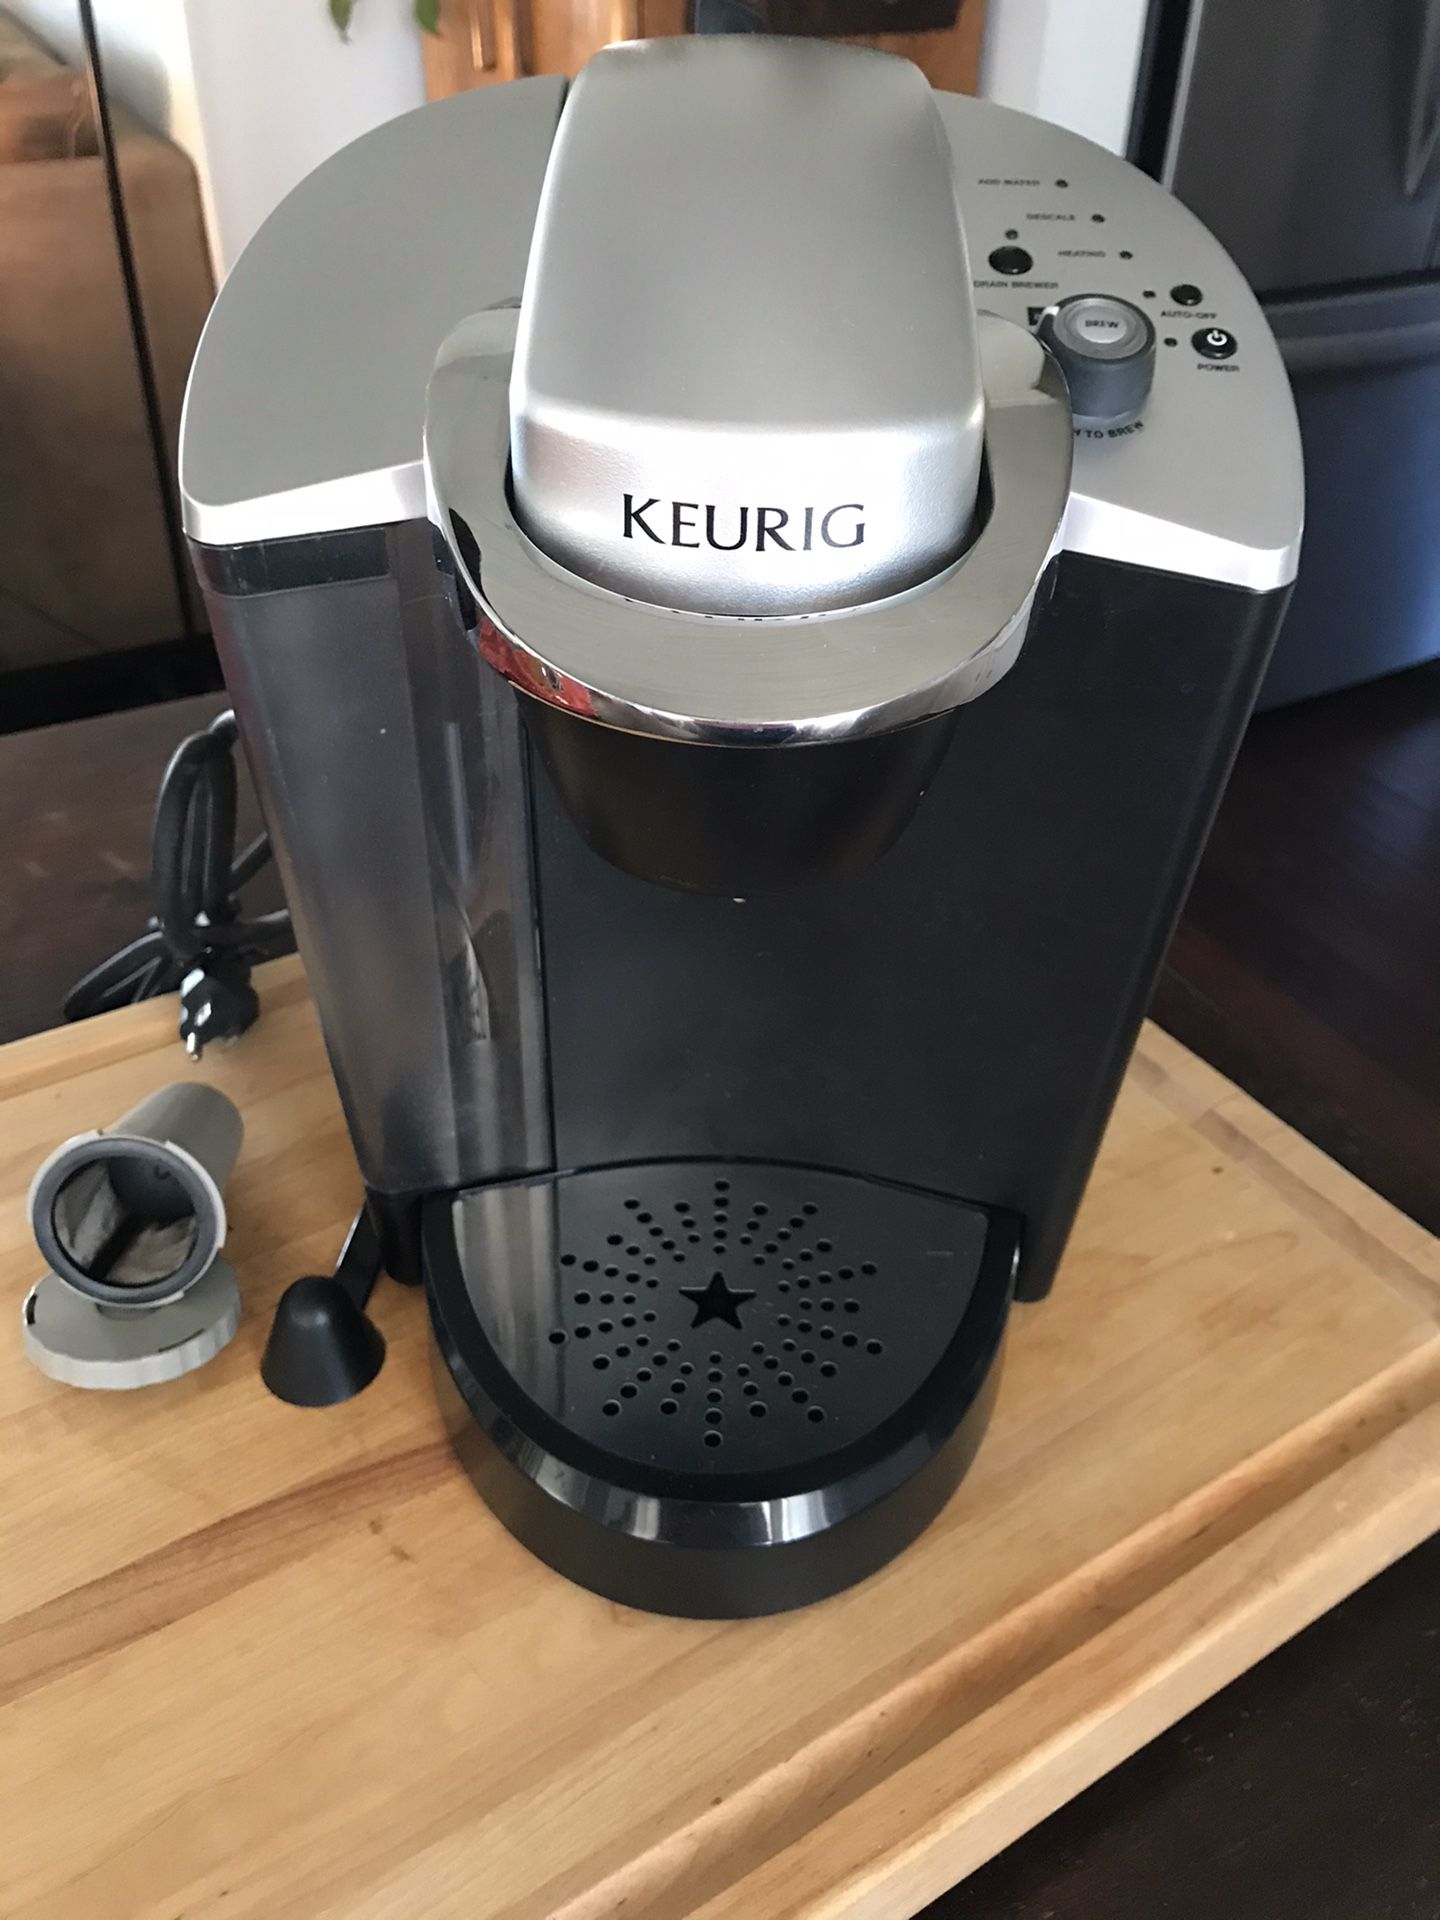 Keurig coffee machine. Instant coffee/tea maker